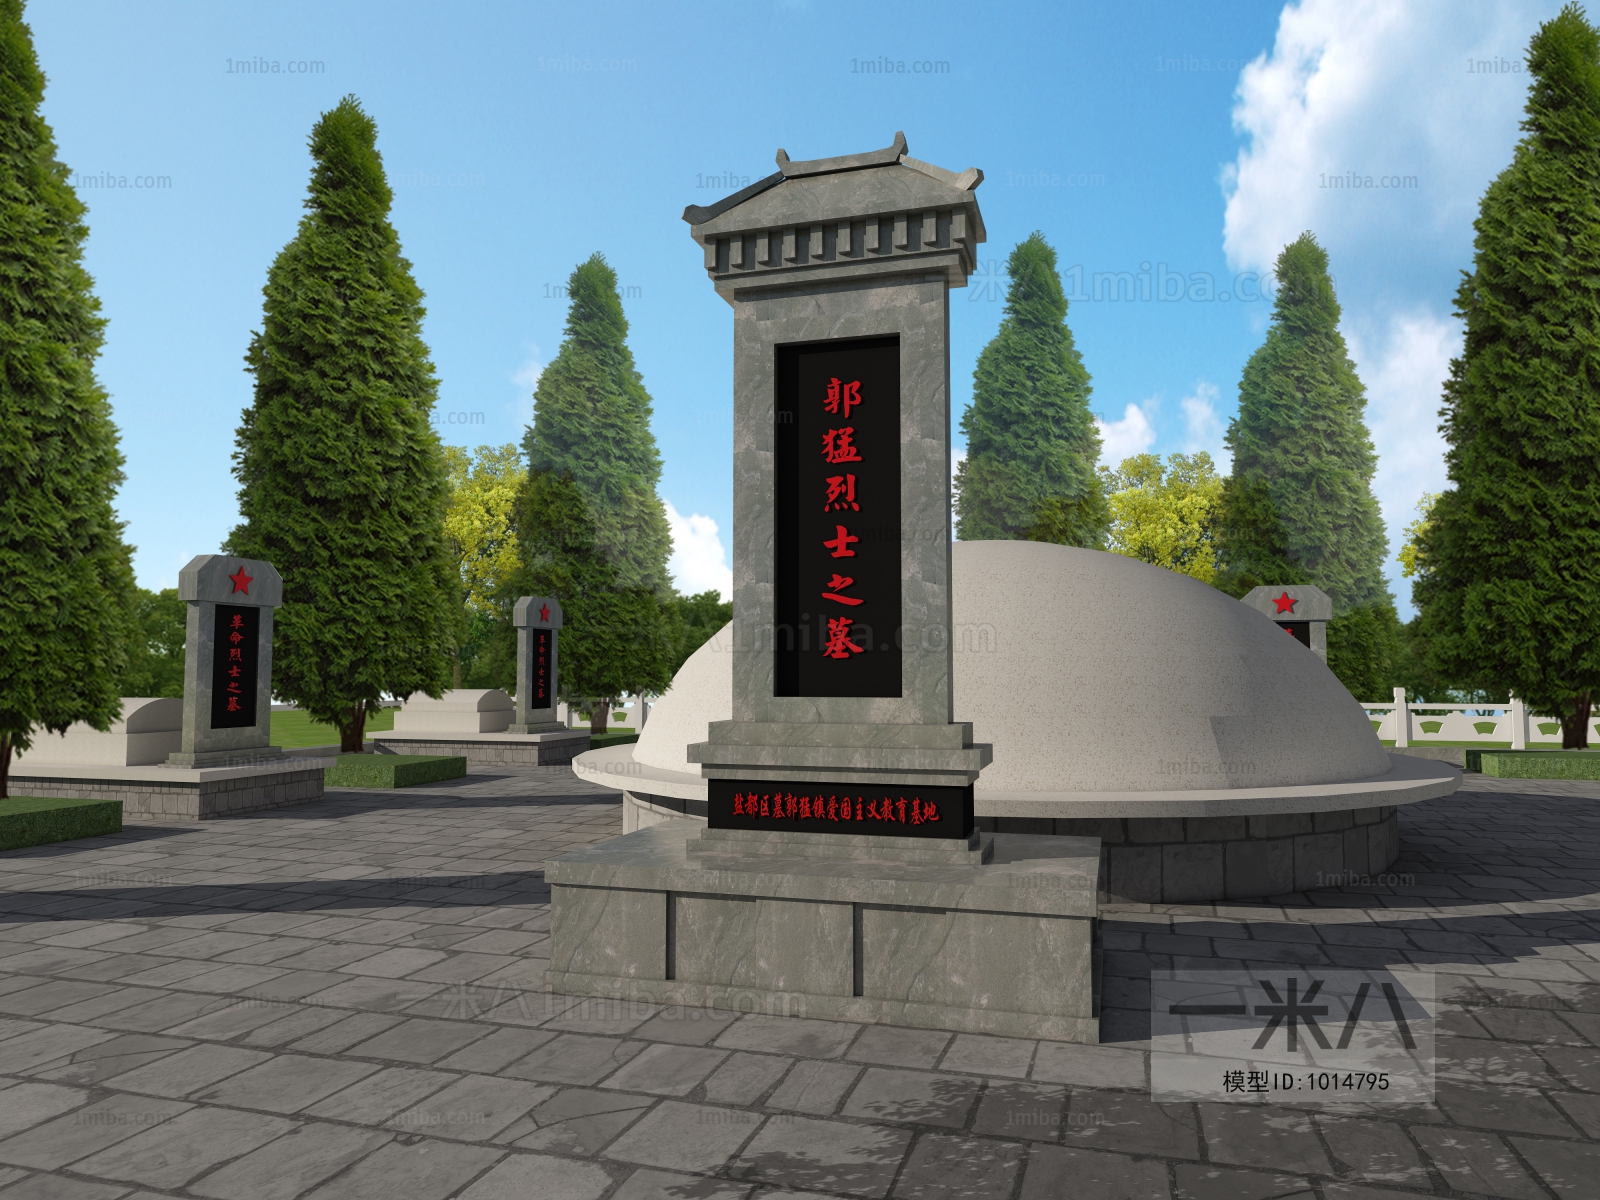 人物环境为后期-新中式公墓烈士陵园墓碑